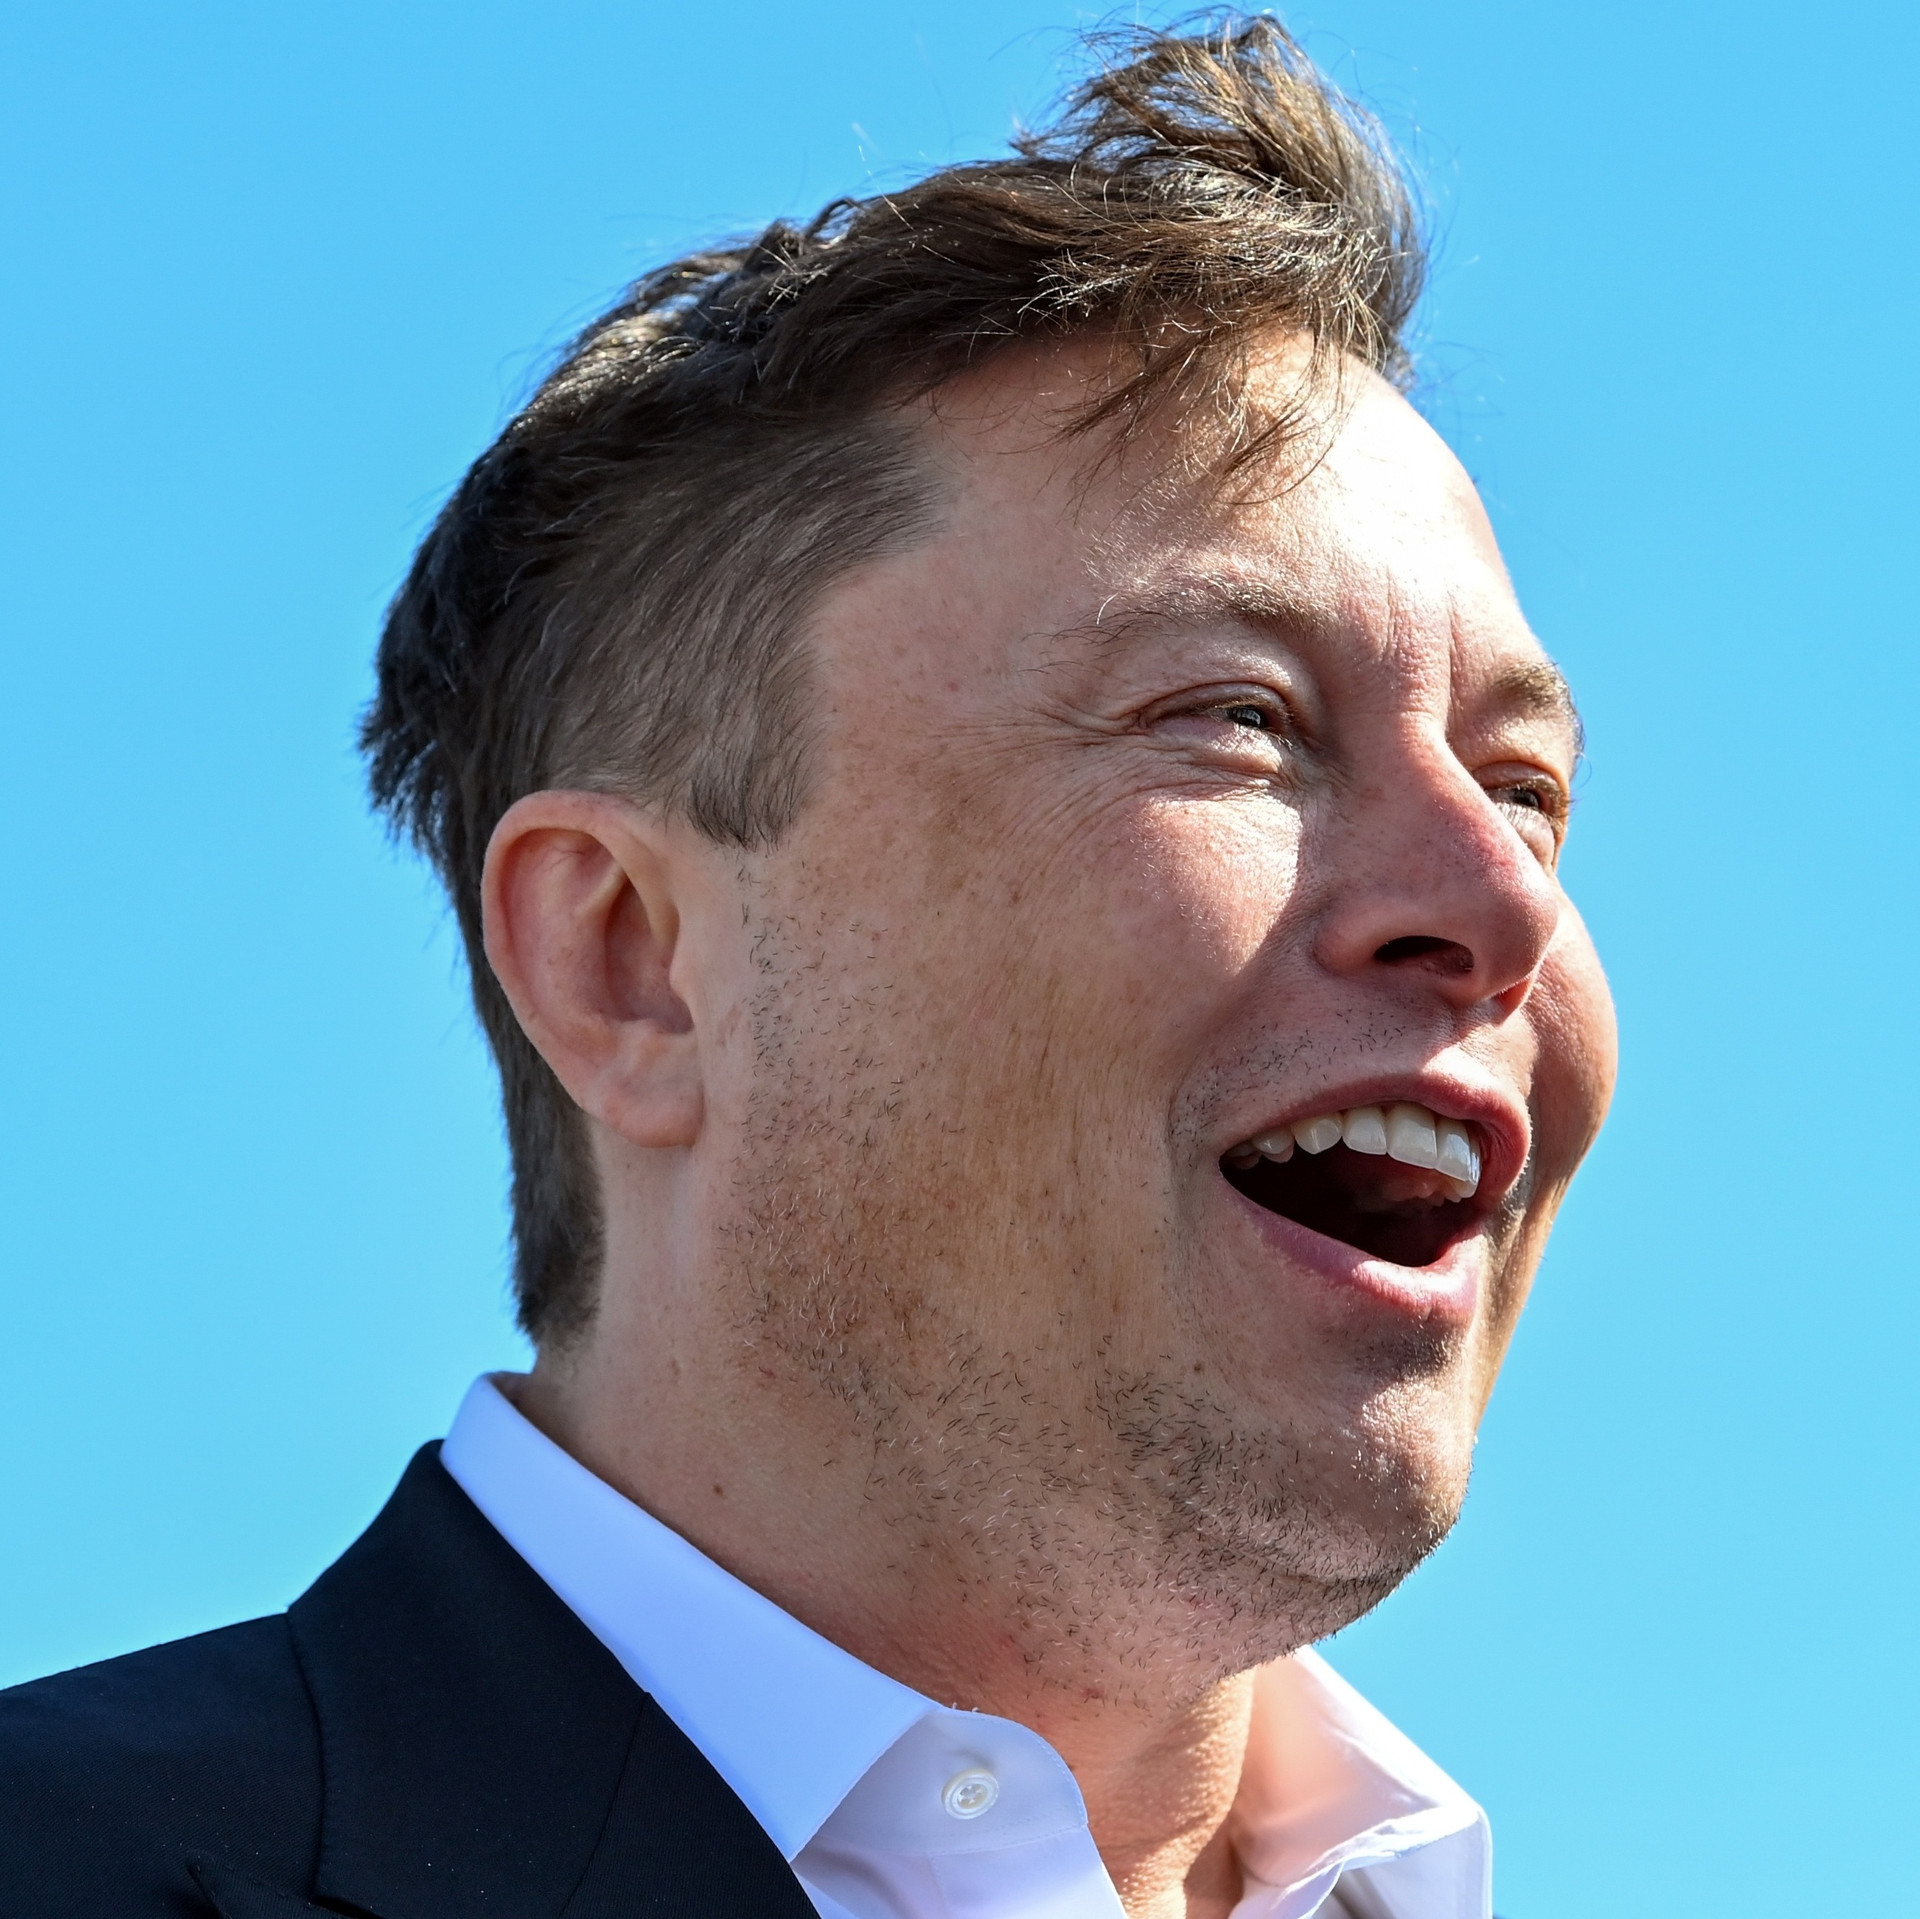 Đừng trách Elon Musk, ông đang cứu Twitter: Toàn tâm mong công ty hòa vốn vào năm sau, những việc vừa làm cũng là để phòng kịch bản xấu nhất - Ảnh 1.